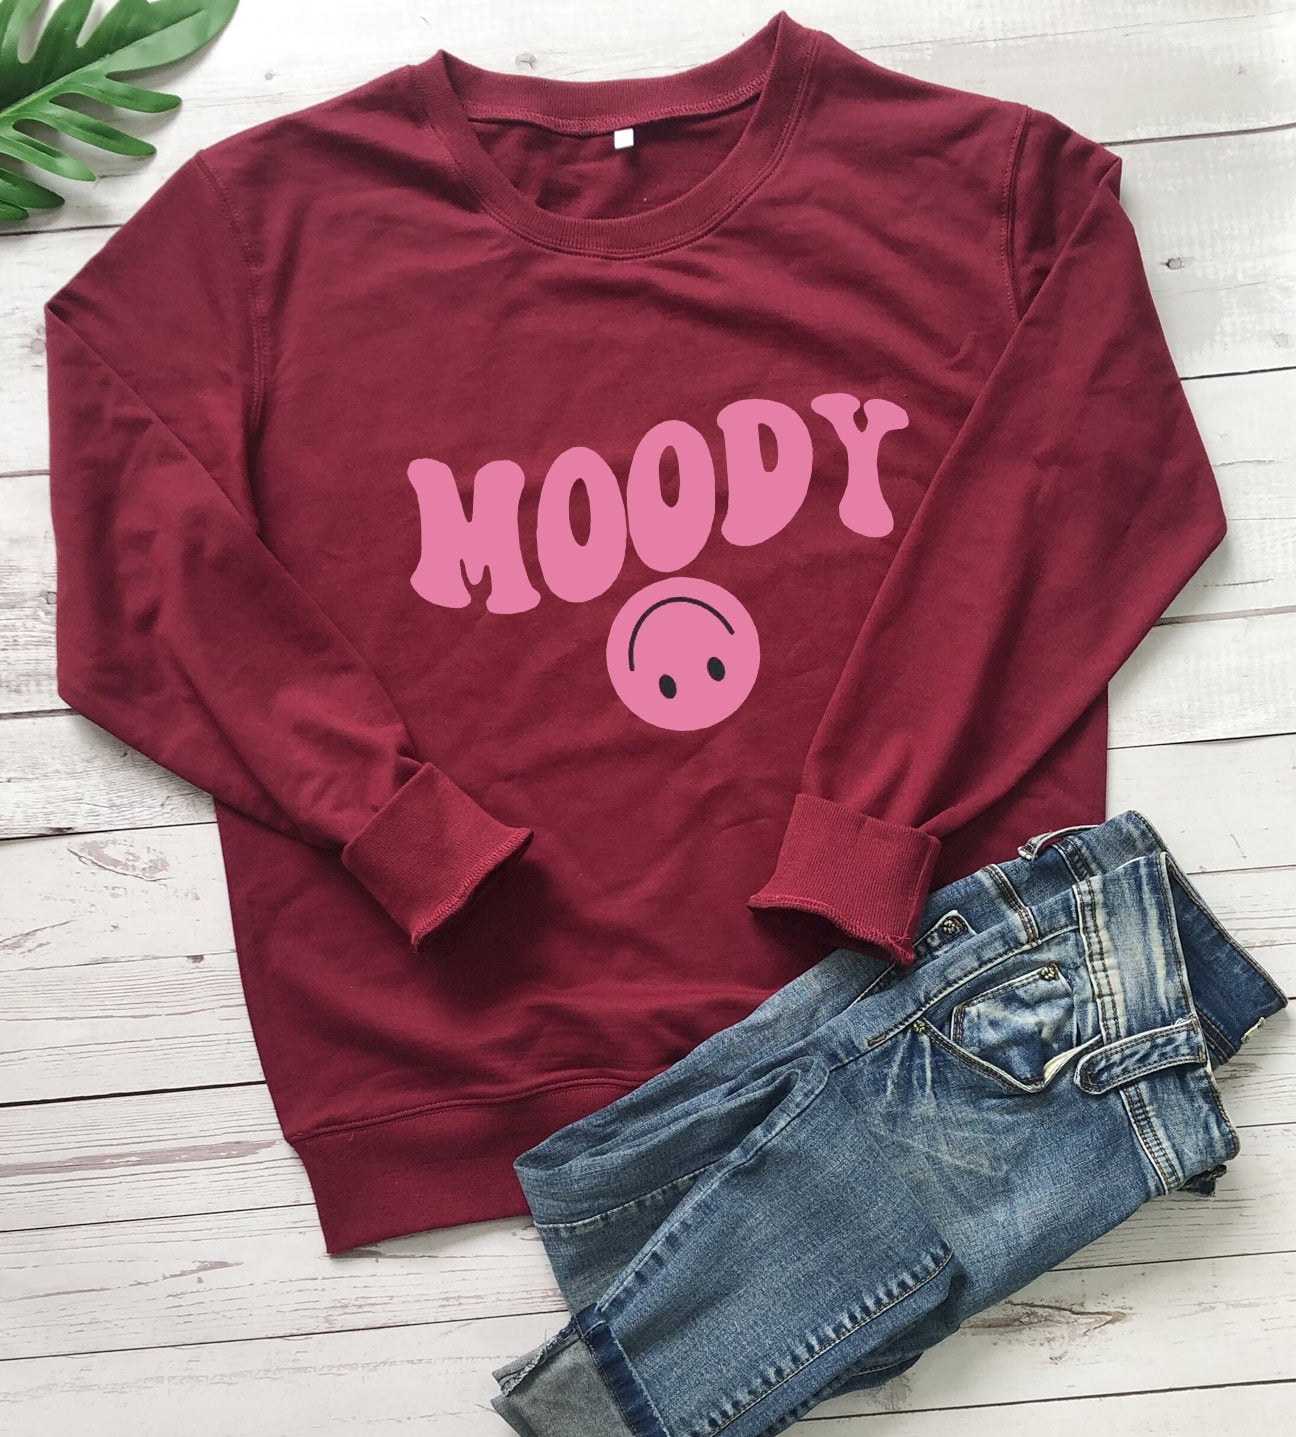 Preppy Aesthetic Pink Smiley Face Moody Crewneck Sweatshirt